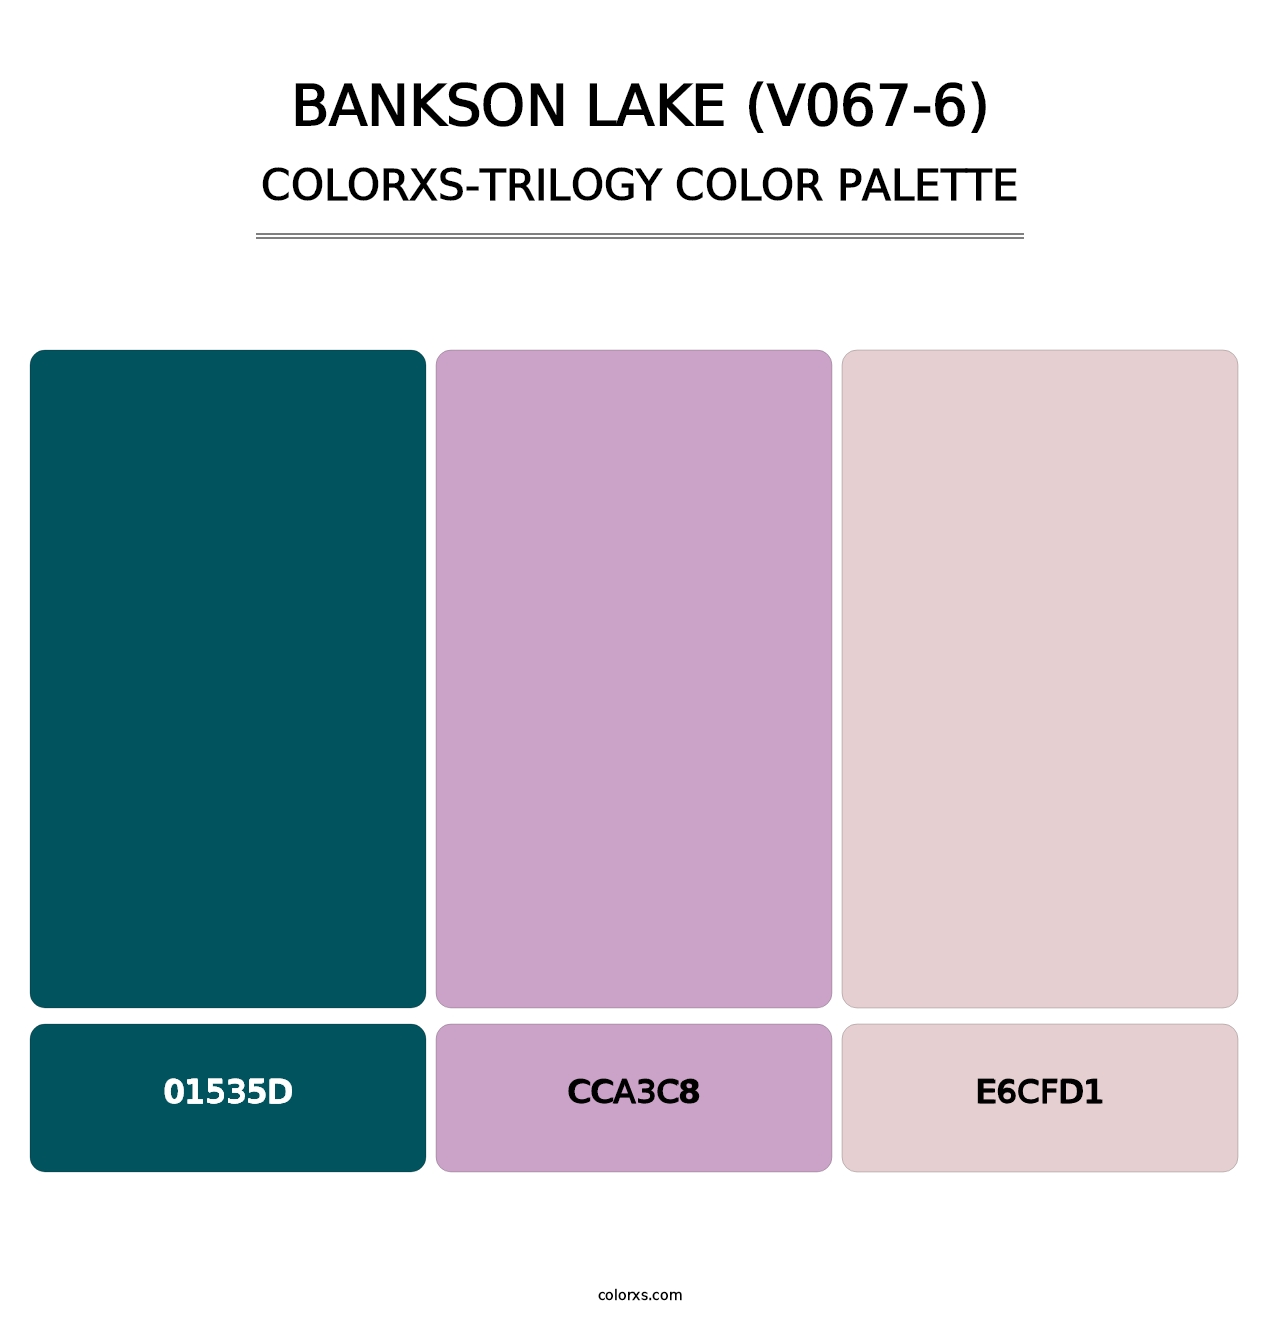 Bankson Lake (V067-6) - Colorxs Trilogy Palette